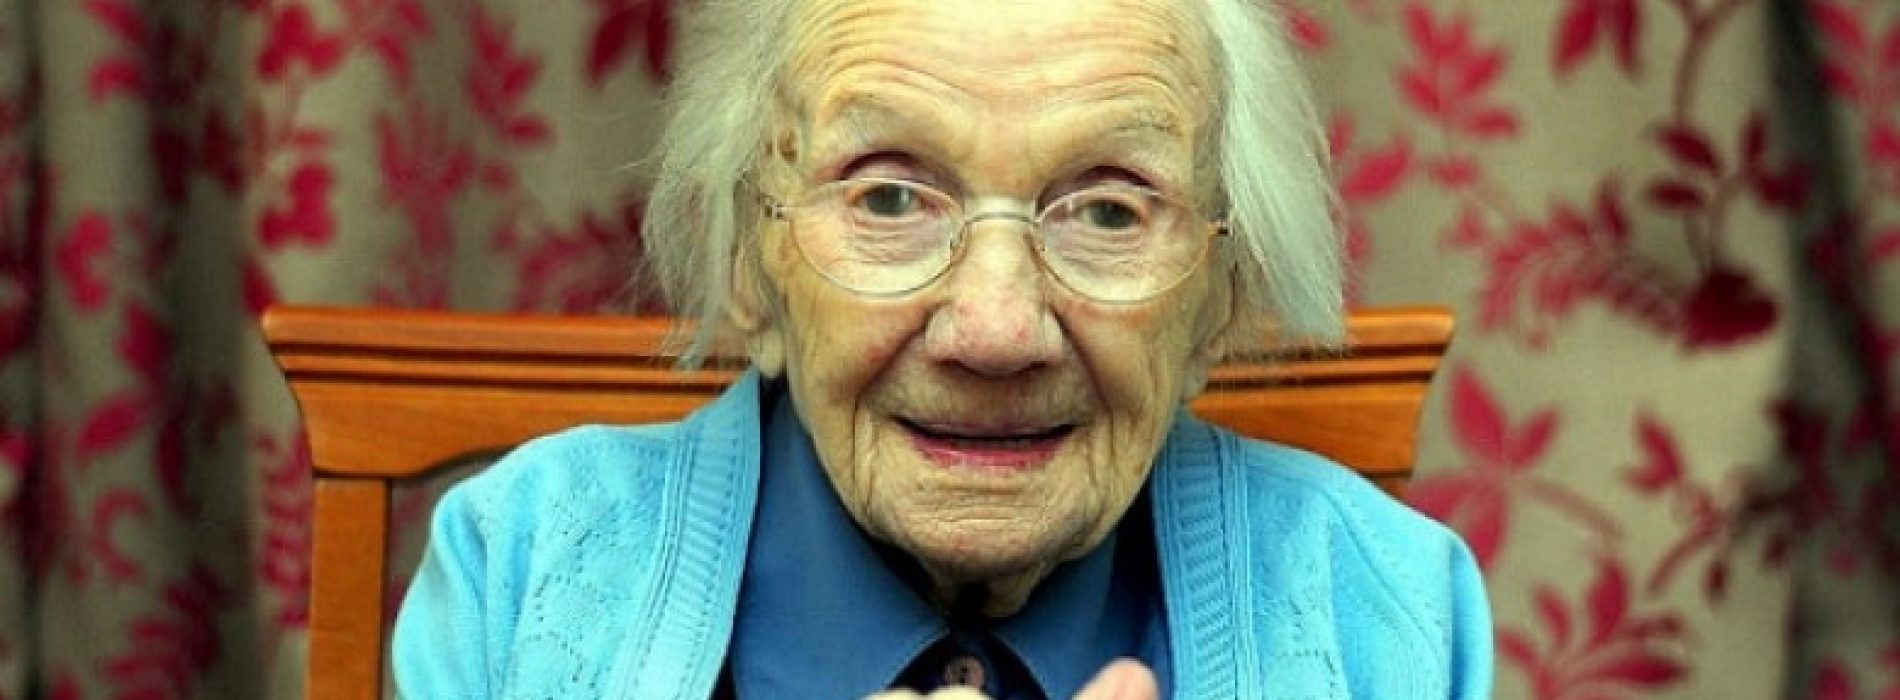 109-jarige vrouw verklapt het geheim van een lang leven